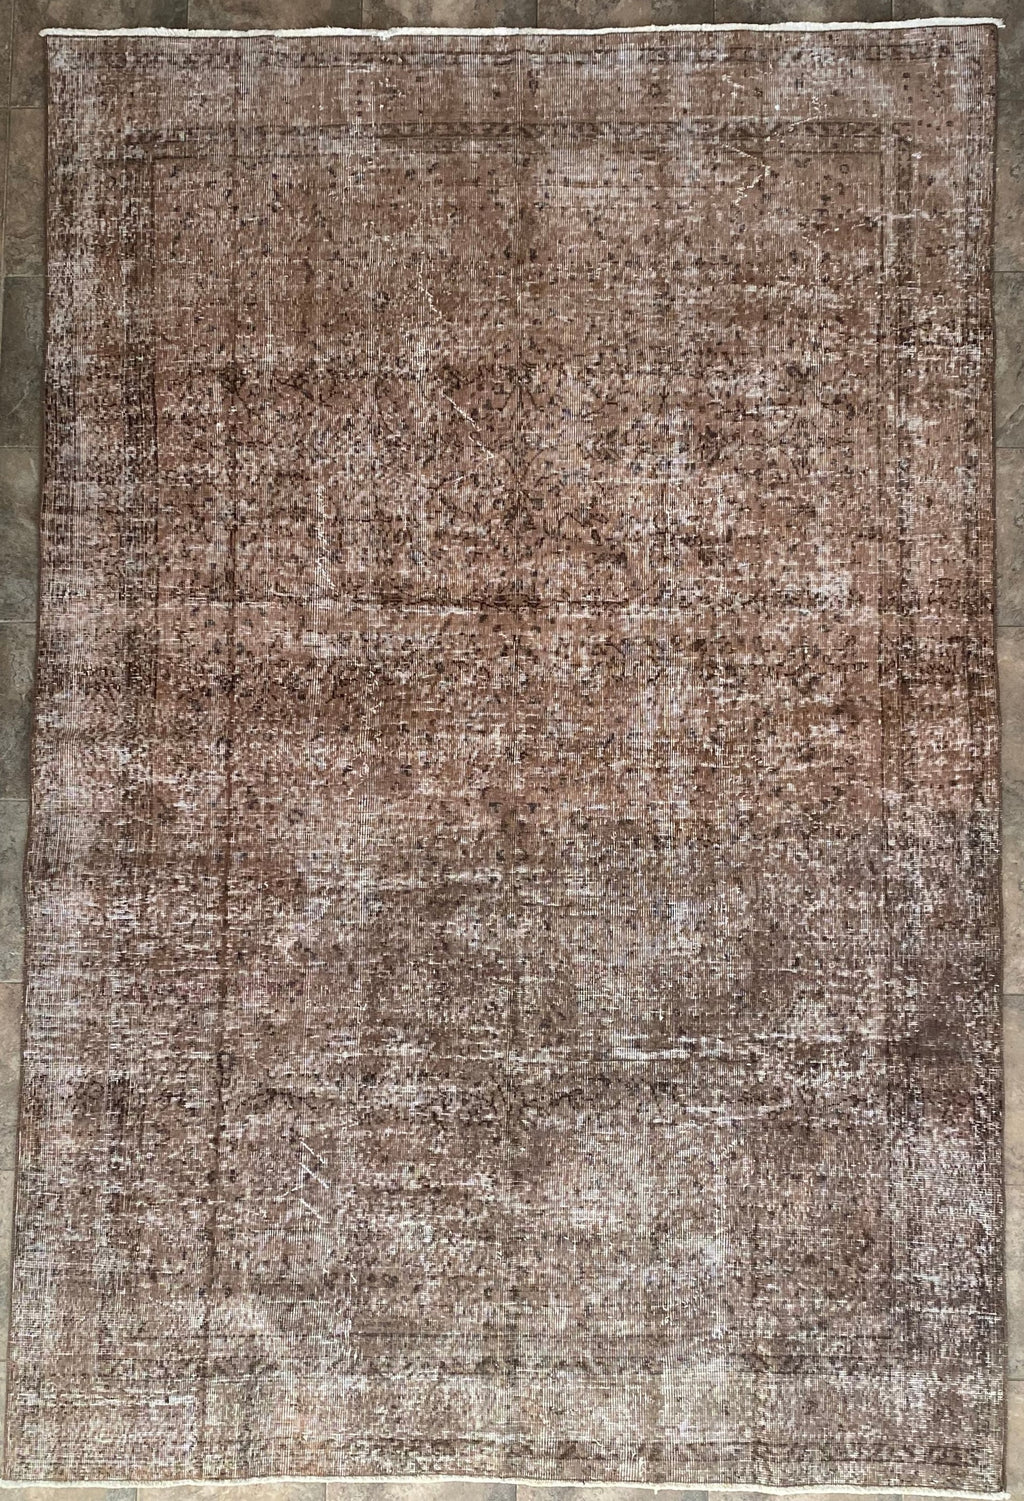 vintage turkish tribal rug - 6' 5" x 9'7"